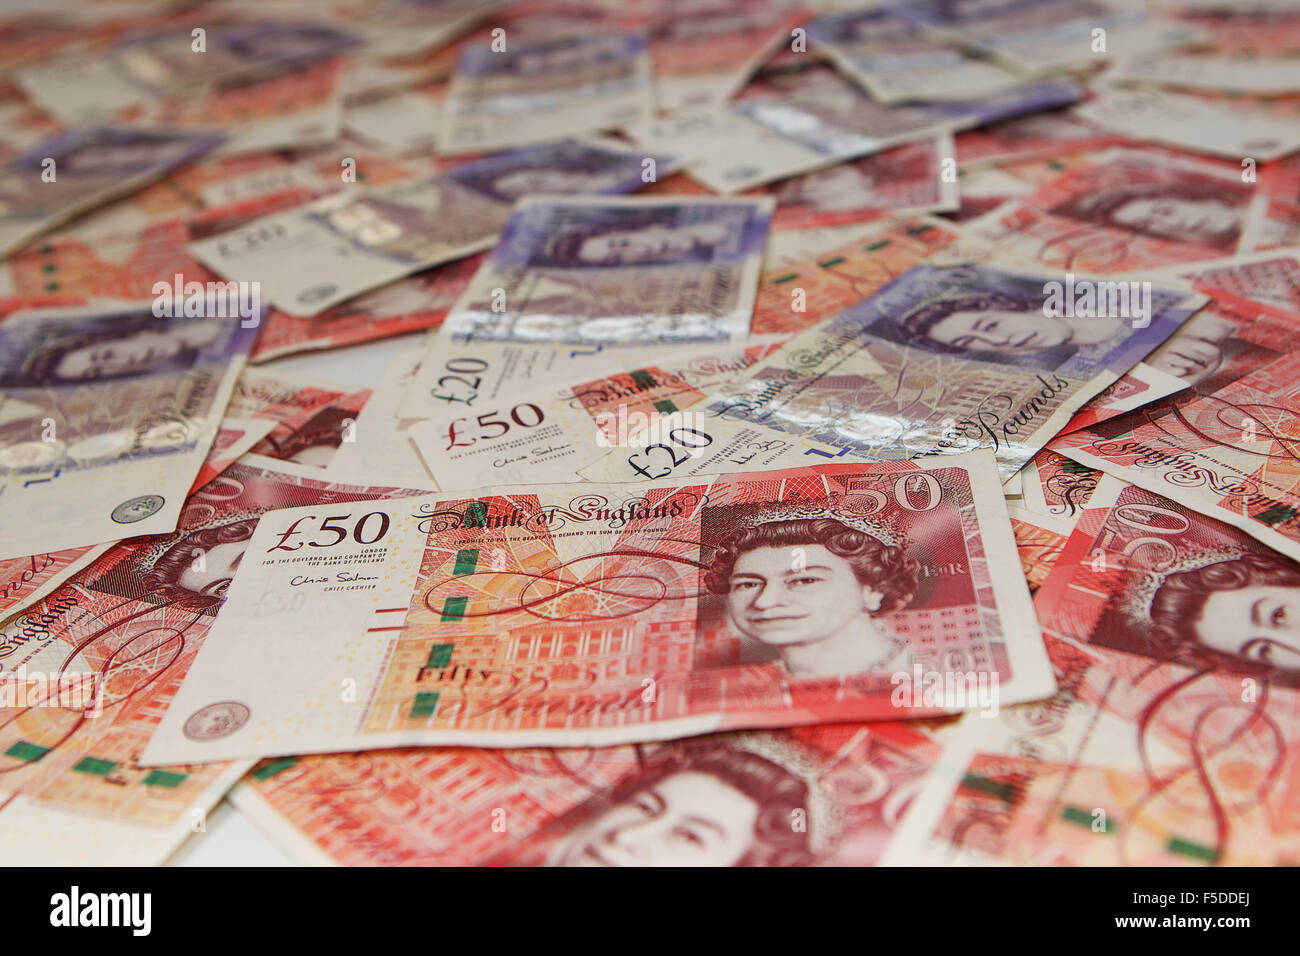 Haufen von £50 und £20 UK Pfund-Noten mit einem prominenten £50. Stockfoto